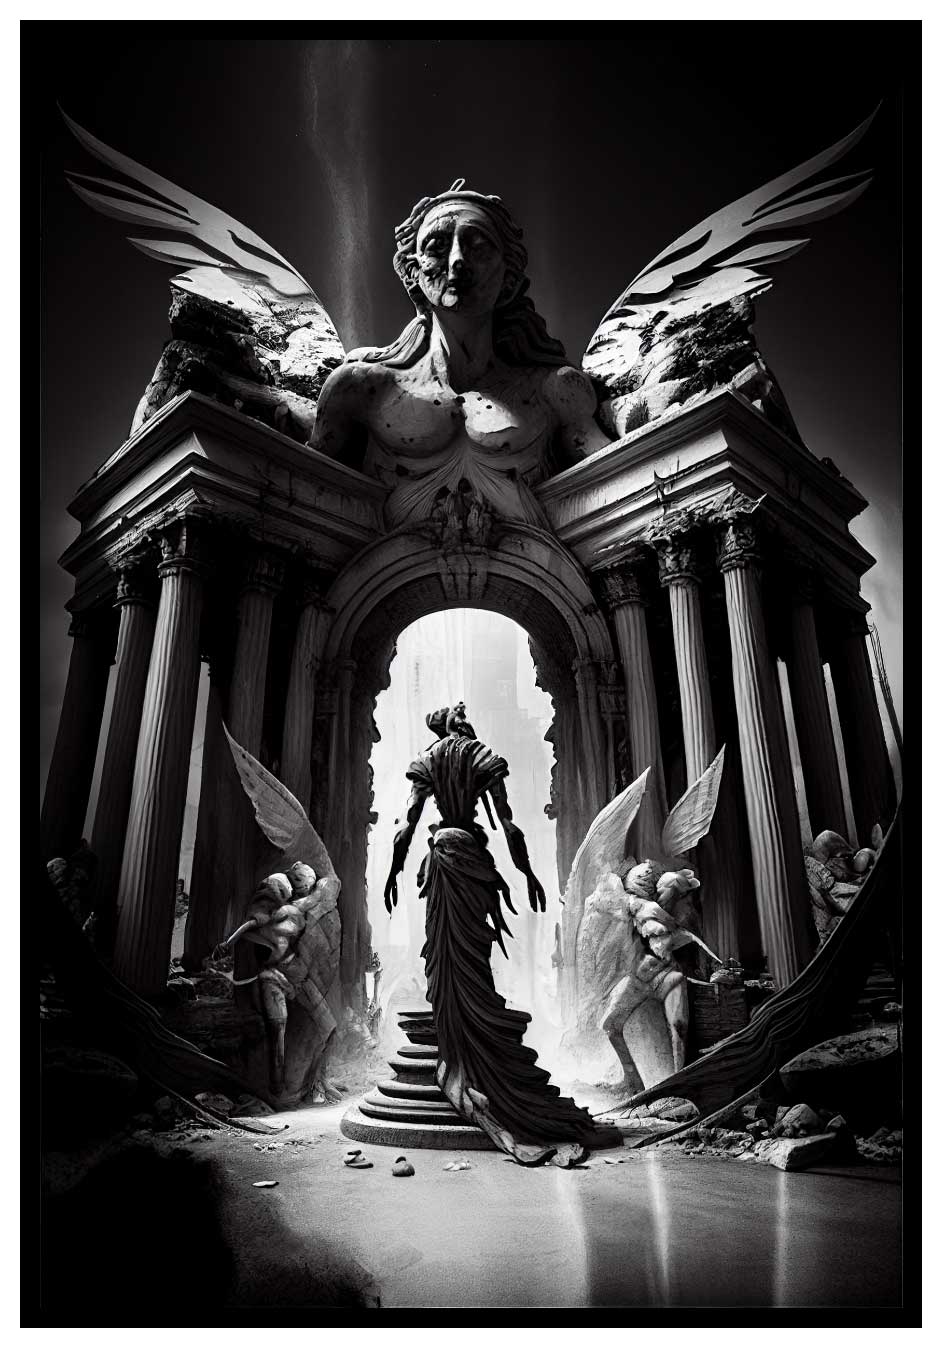 Demone del tempio - Poster di arte oscura 